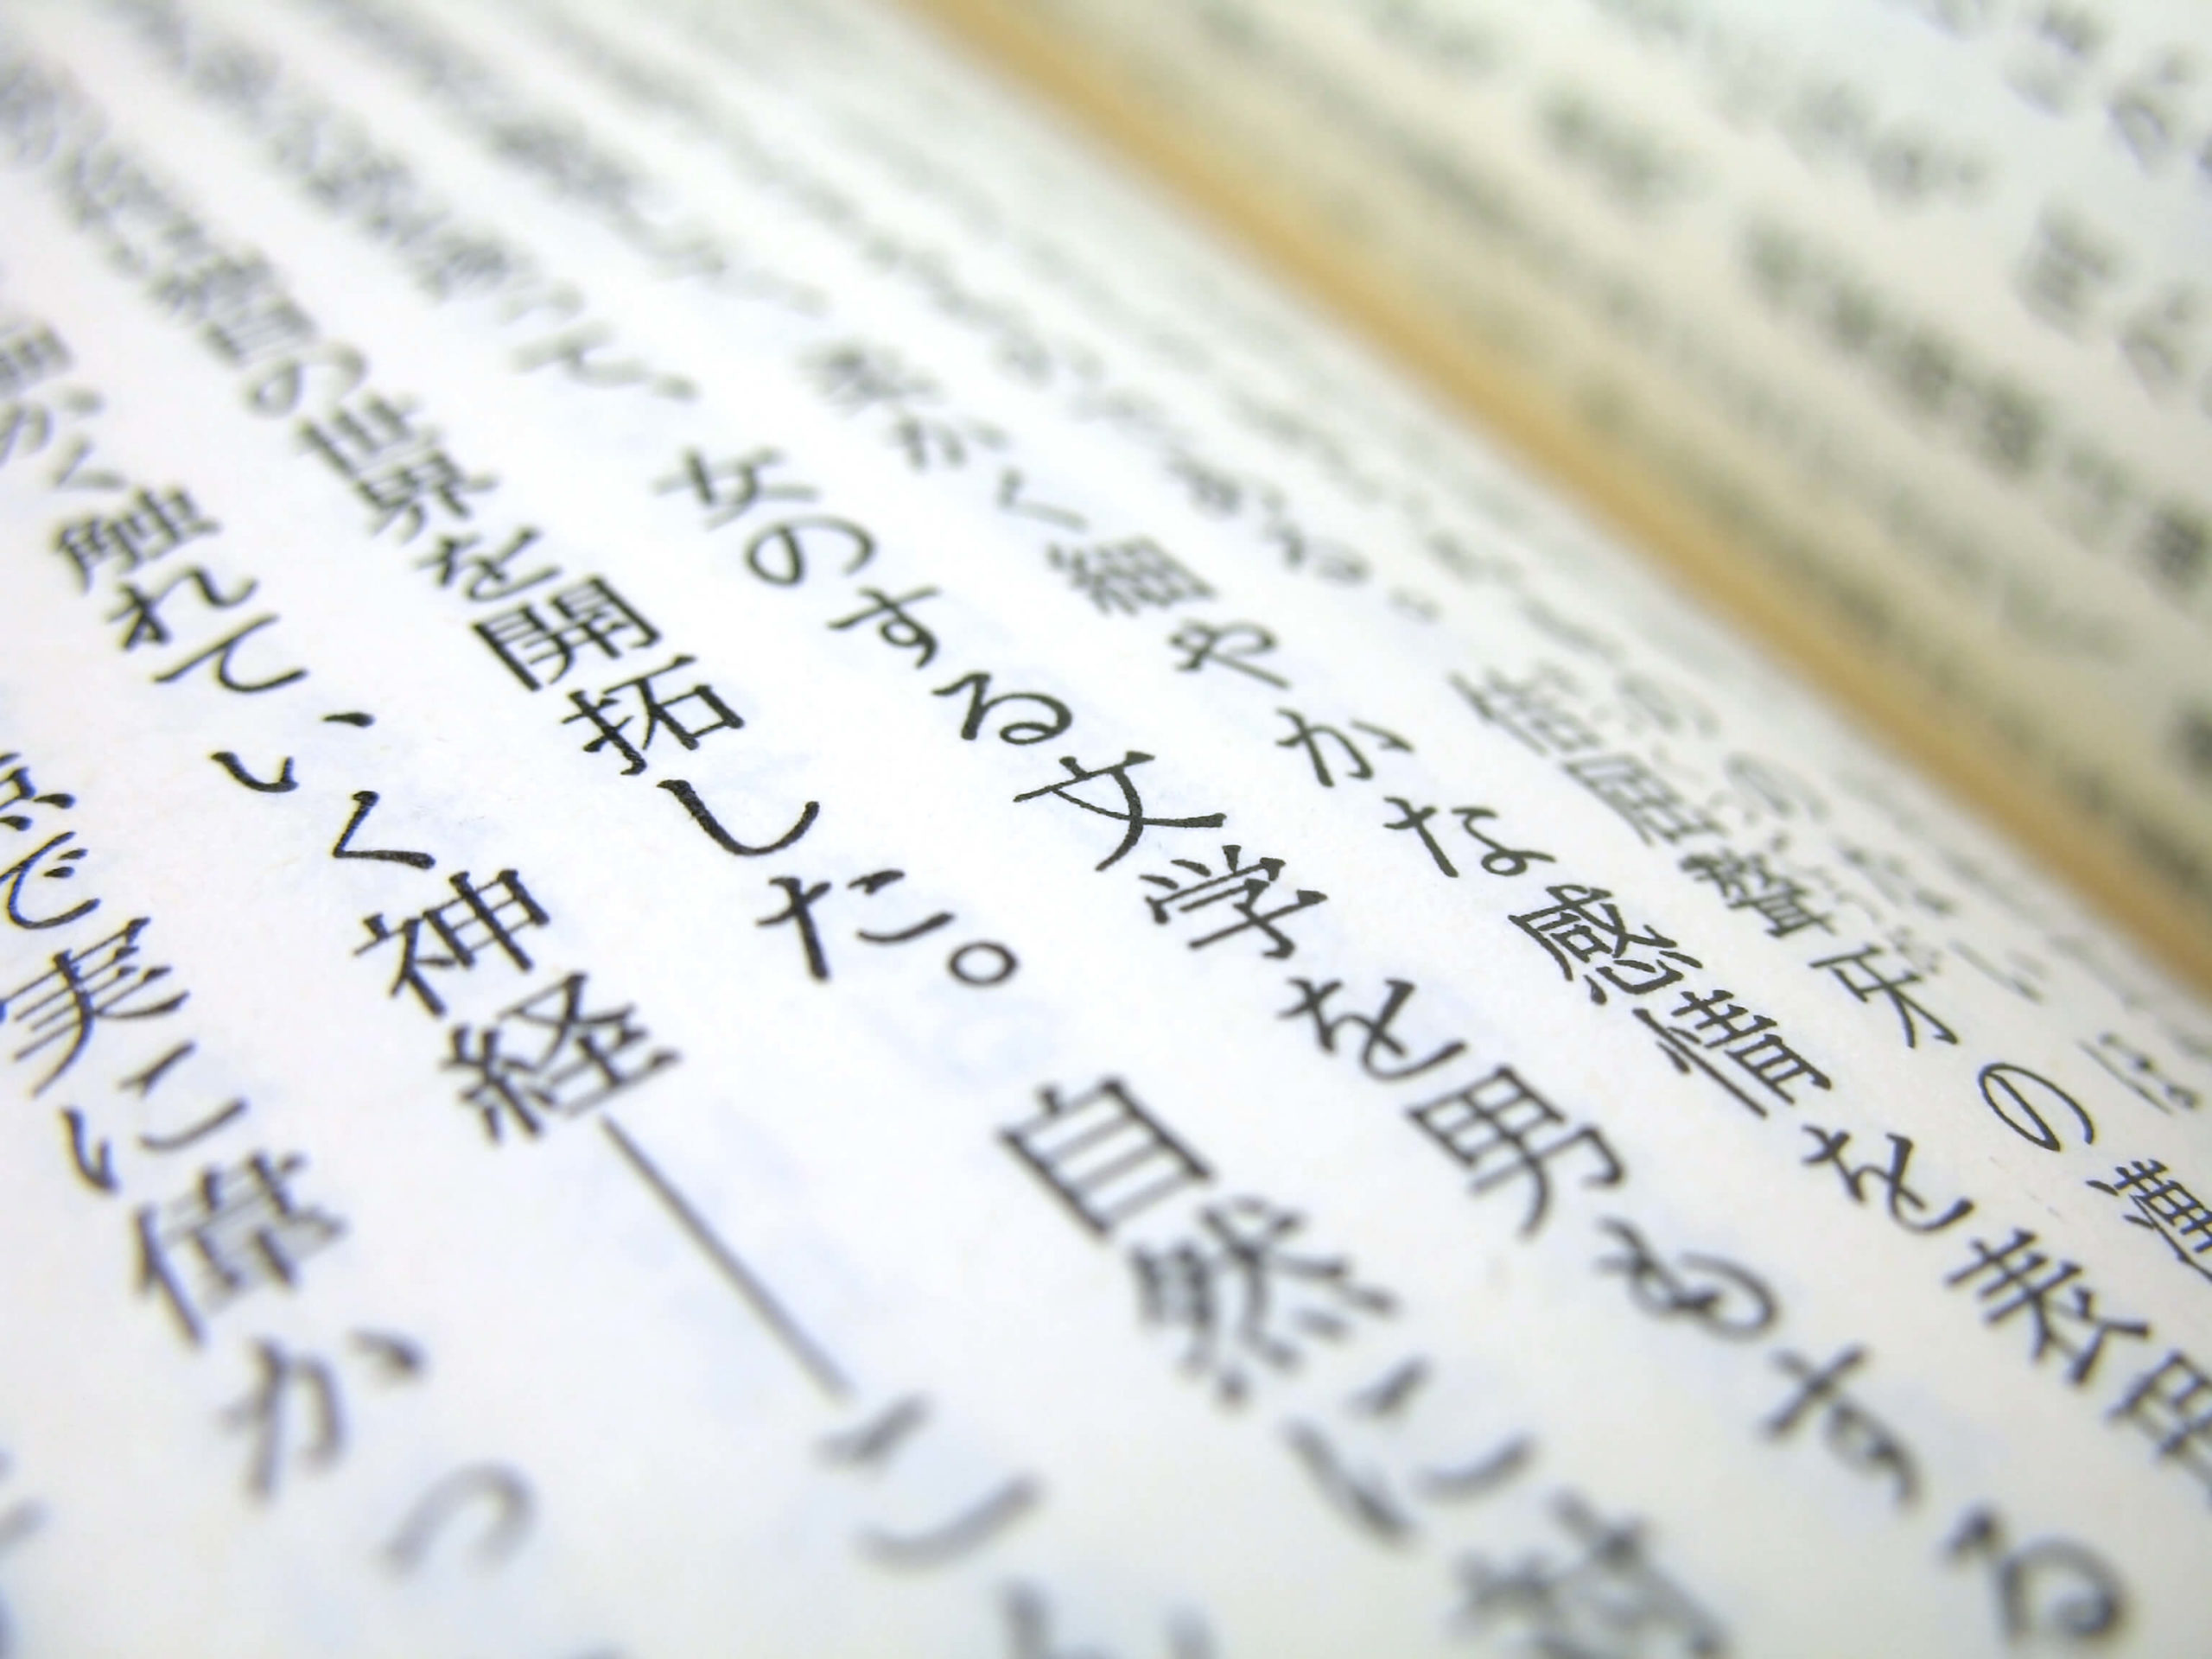 the Japanese language